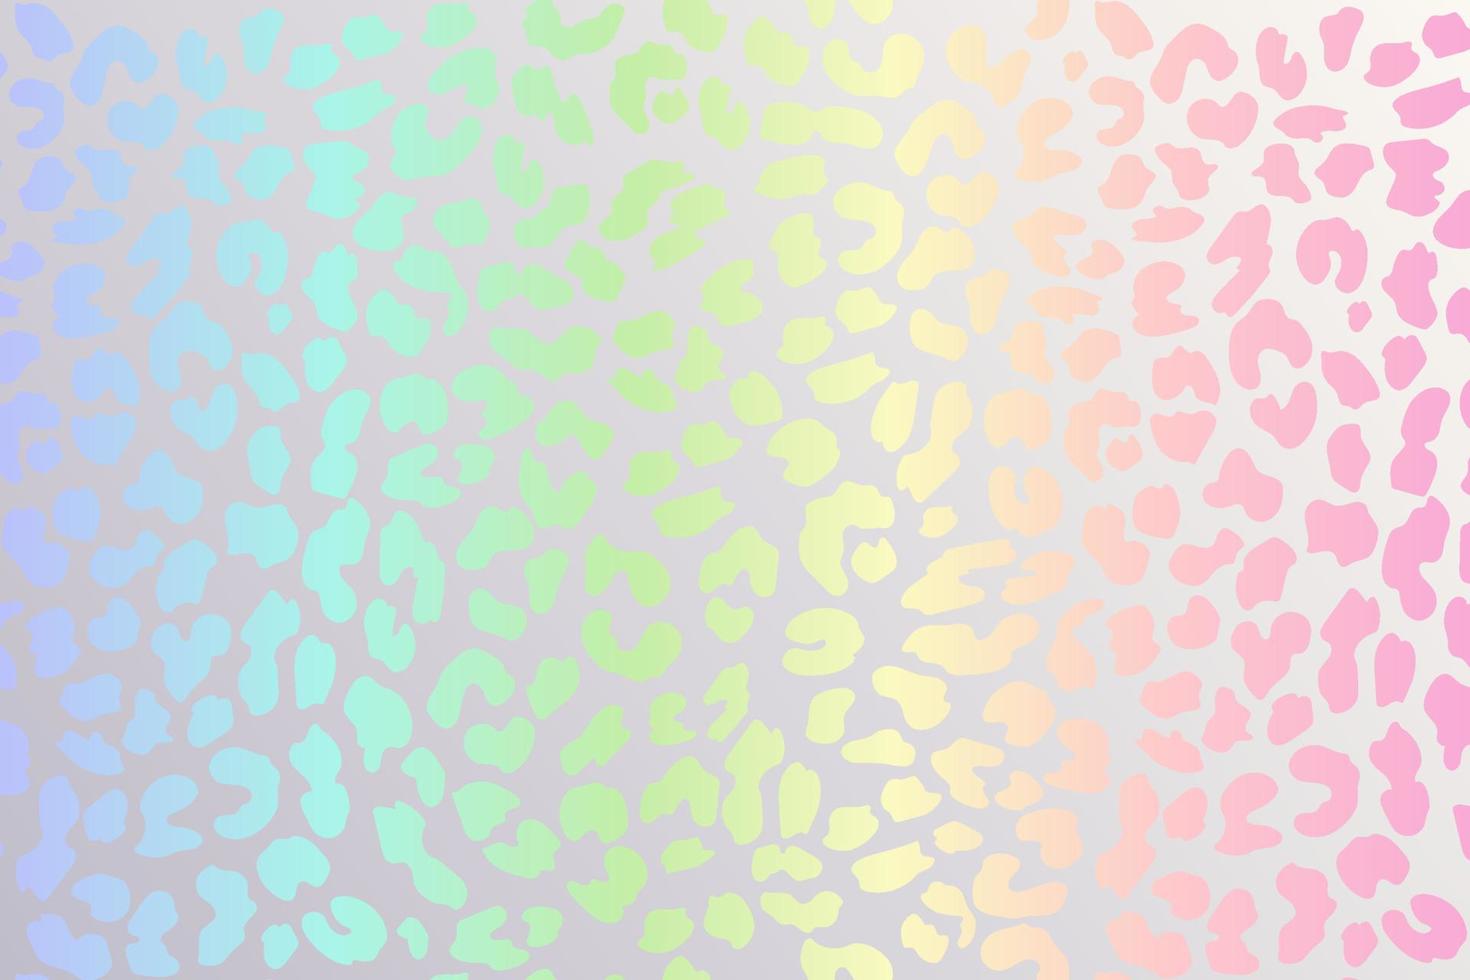 fundo de leopardo arco-íris. textura de chita de folha holográfica. impressão gradiente de padrão animal. ilustração em vetor abstrato pastel.